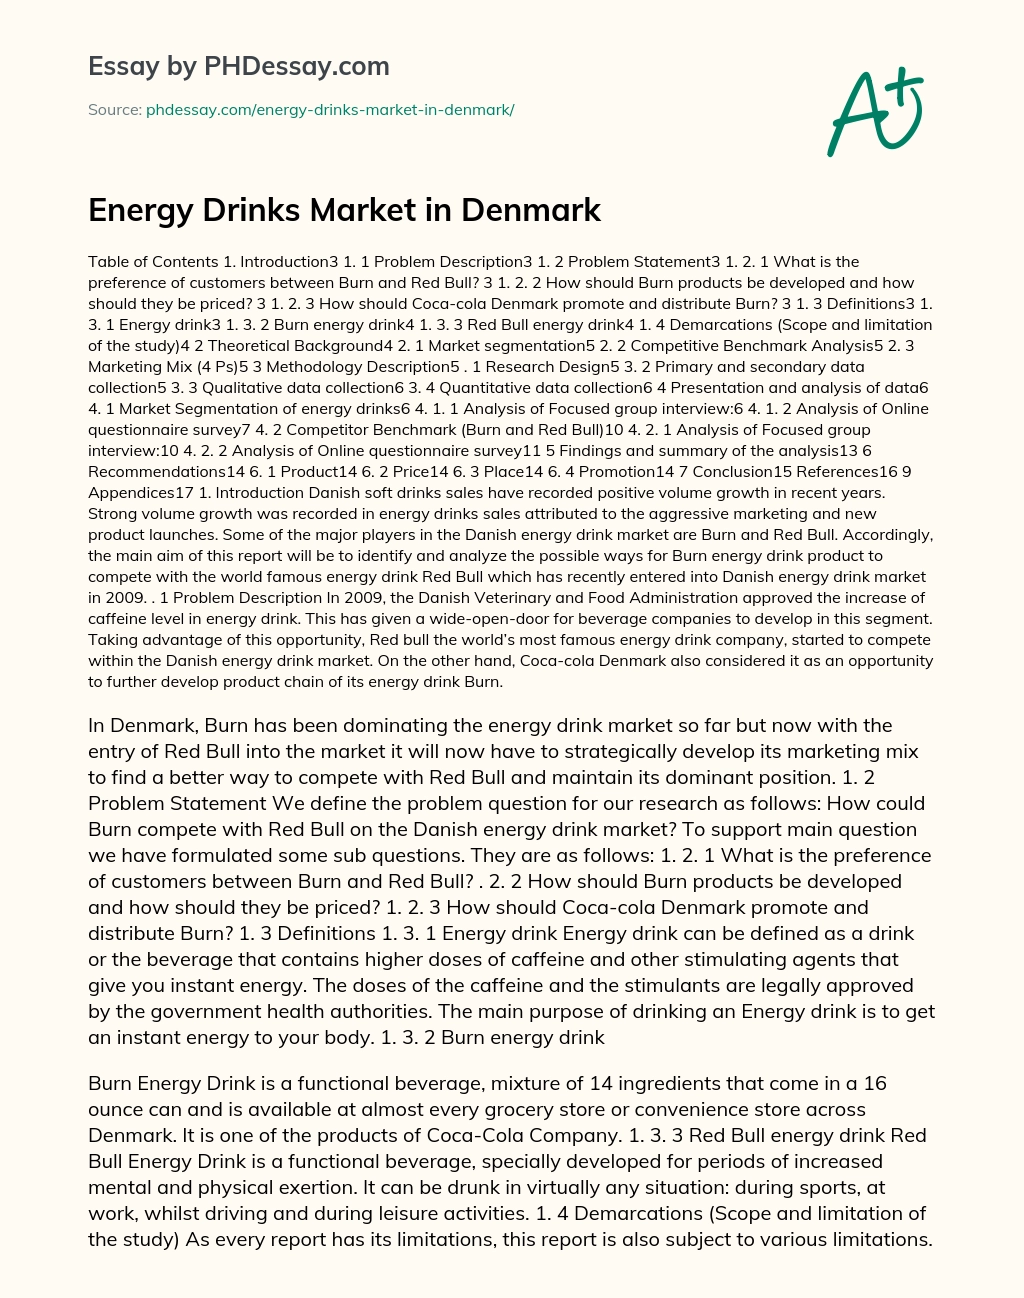 Energy Drinks Market in Denmark essay